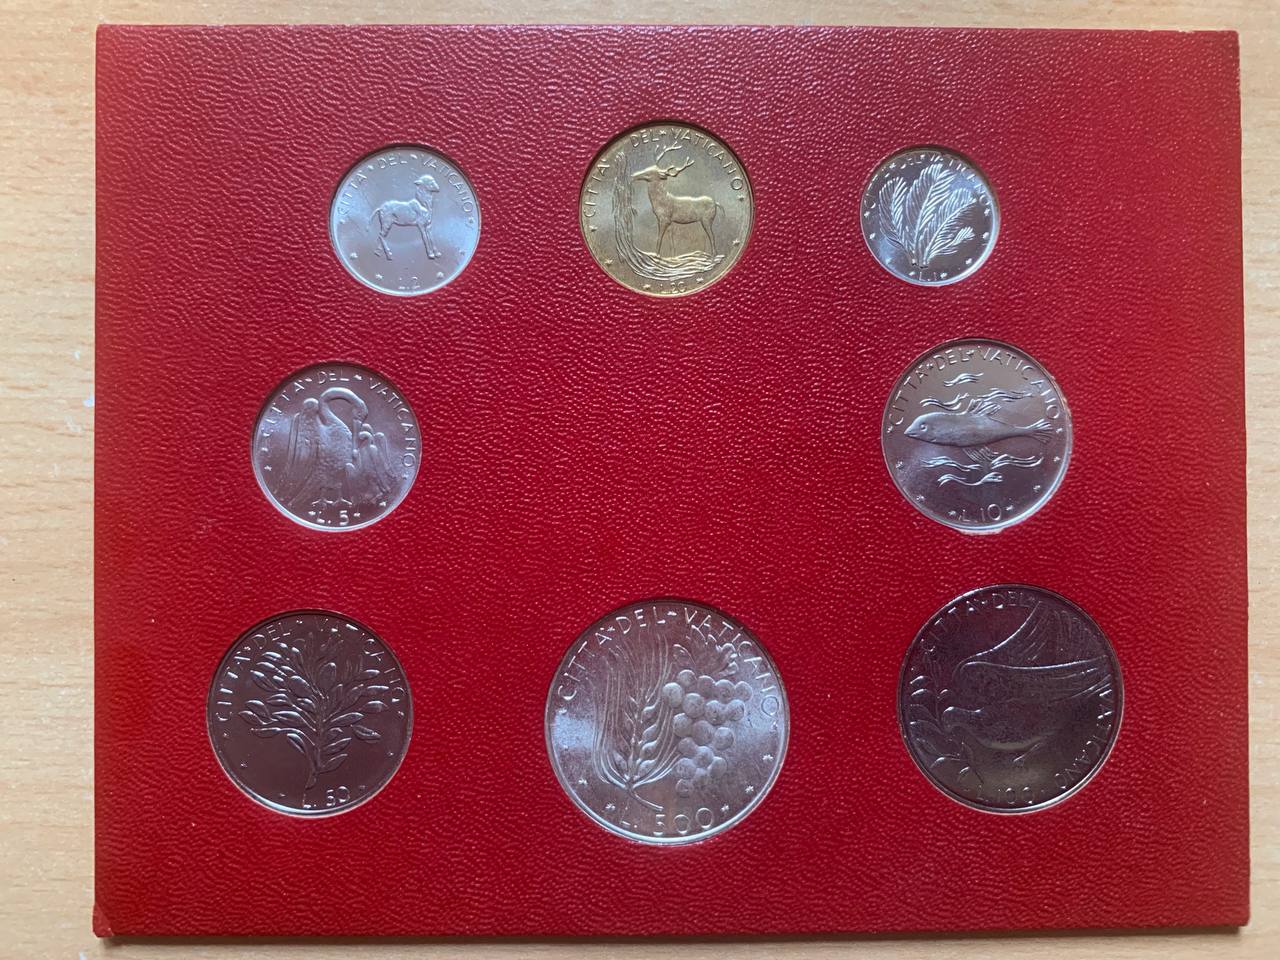  Jahresset von Vatikan 1976 BU (8 Münzen)   